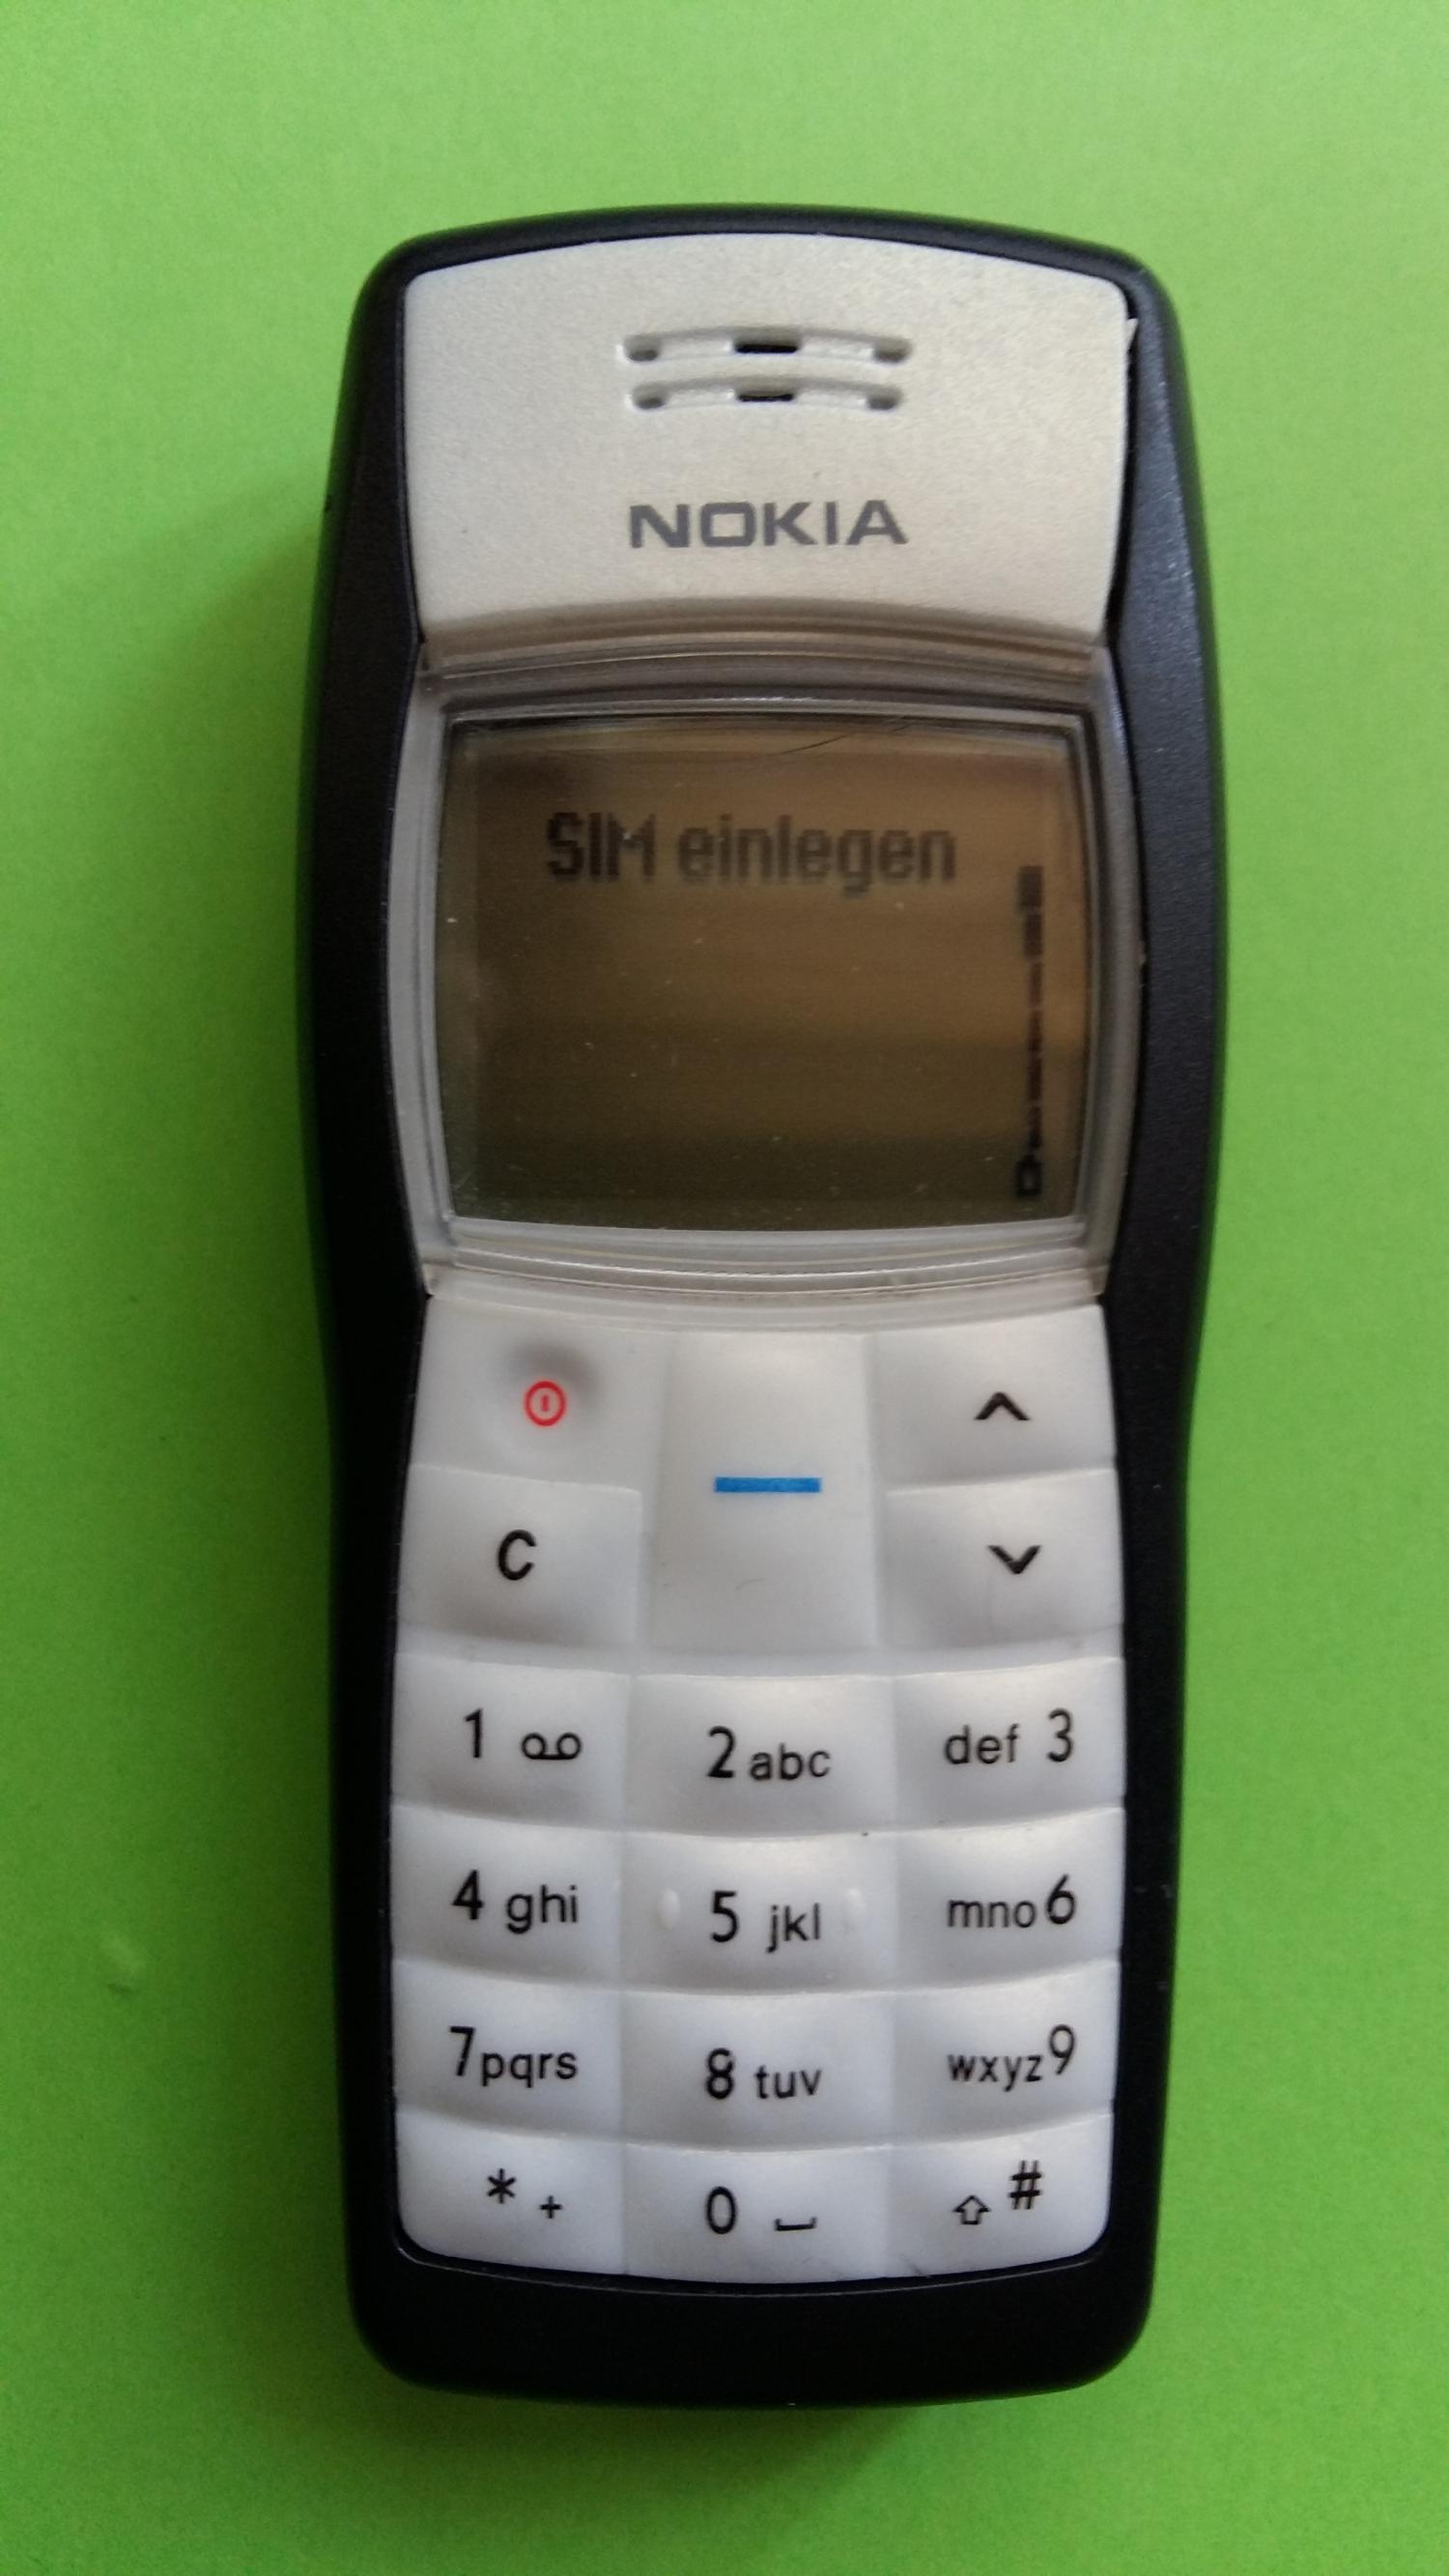 image-7313457-Nokia 1100 (2)1.jpg